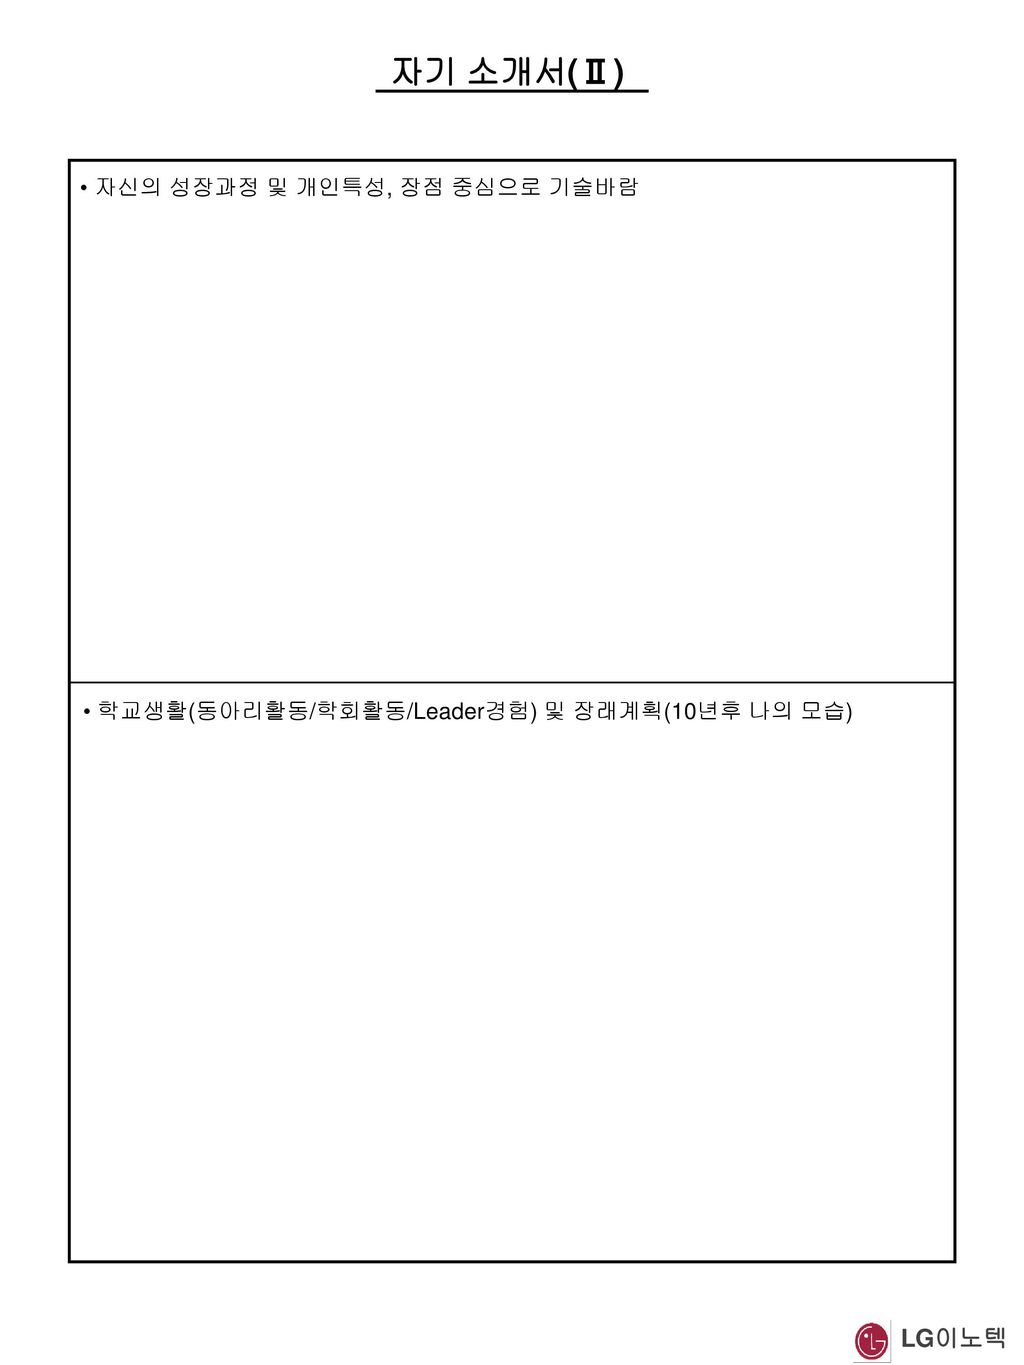 자기 소개서(Ⅱ) LG이노텍 자신의 성장과정 및 개인특성, 장점 중심으로 기술바람